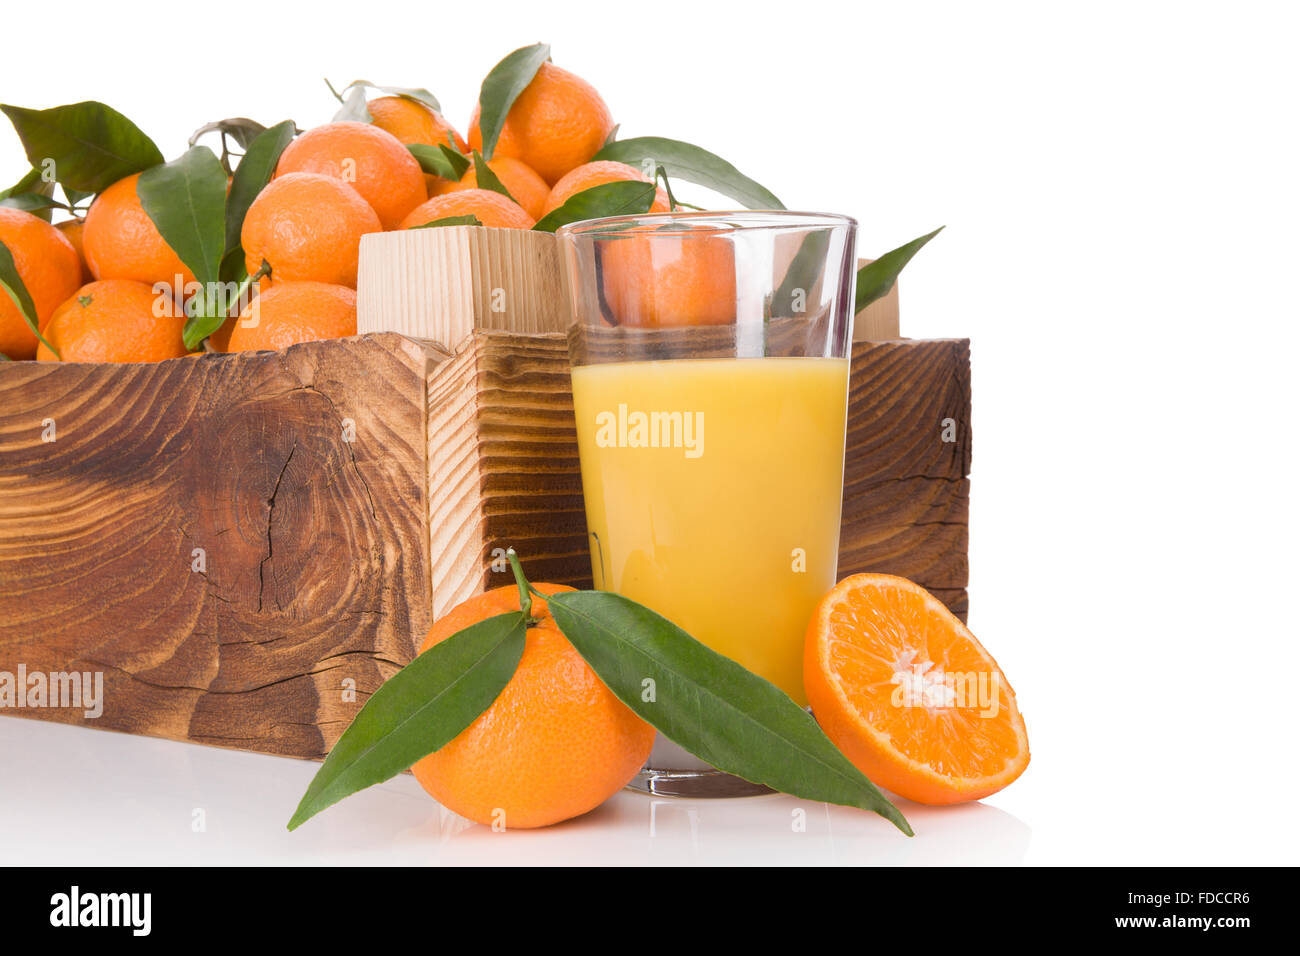 Succo di frutta fresco e mature, di mandarini con foglie verdi in casse di legno. Organici di mandarini freschi, sani mangiando frutta. Foto Stock